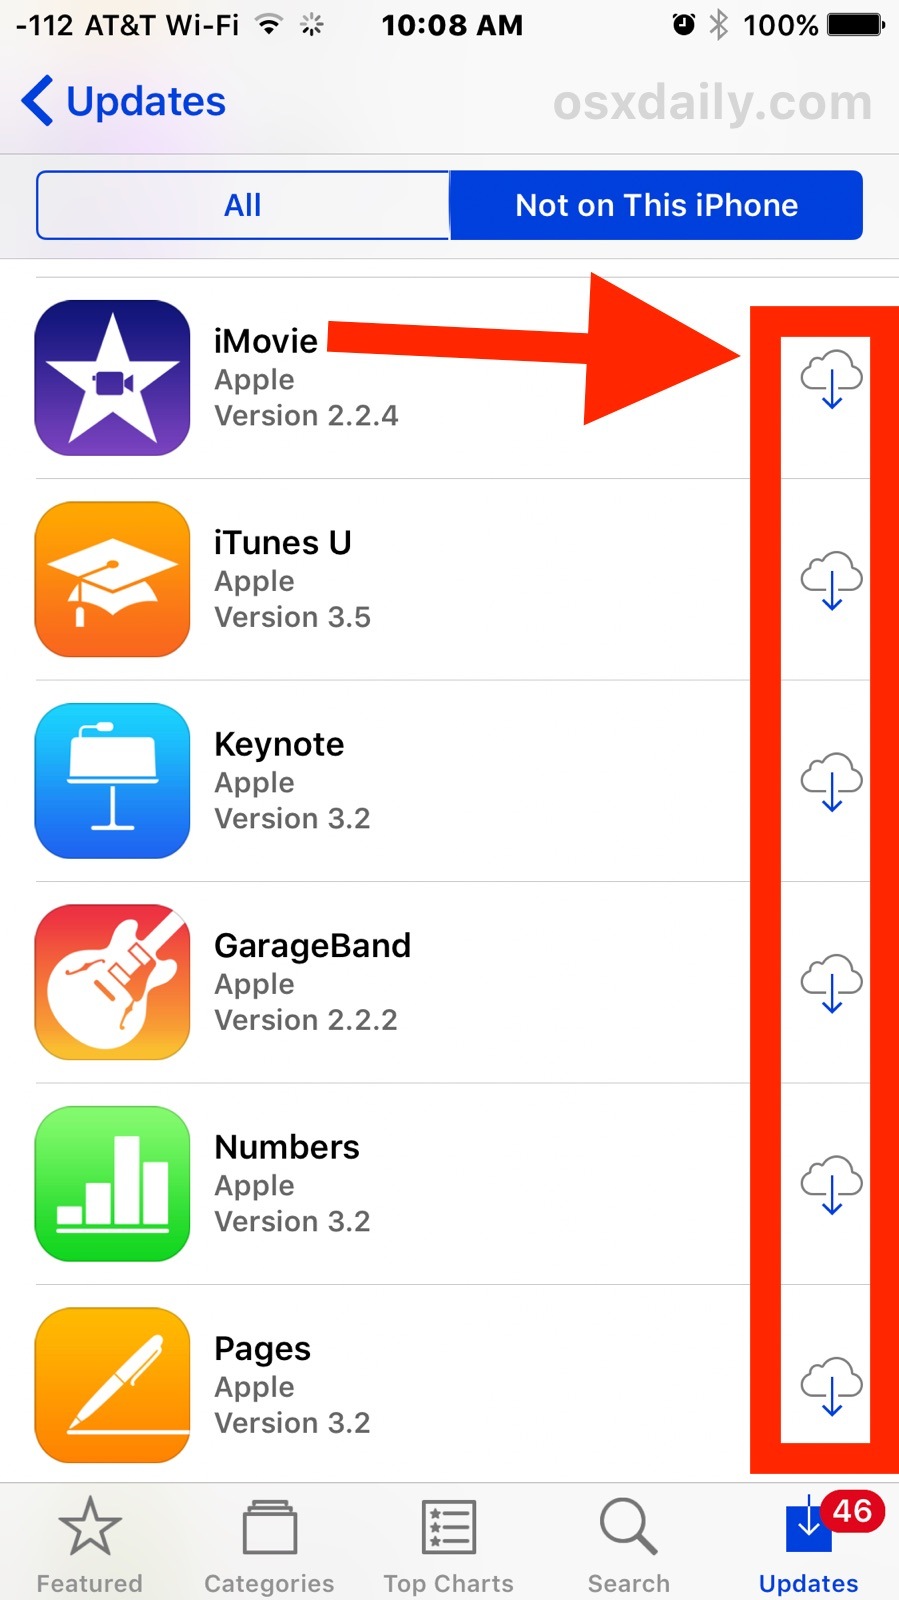 Riscarica le app acquistate in precedenza che non si trovano sul dispositivo iOS